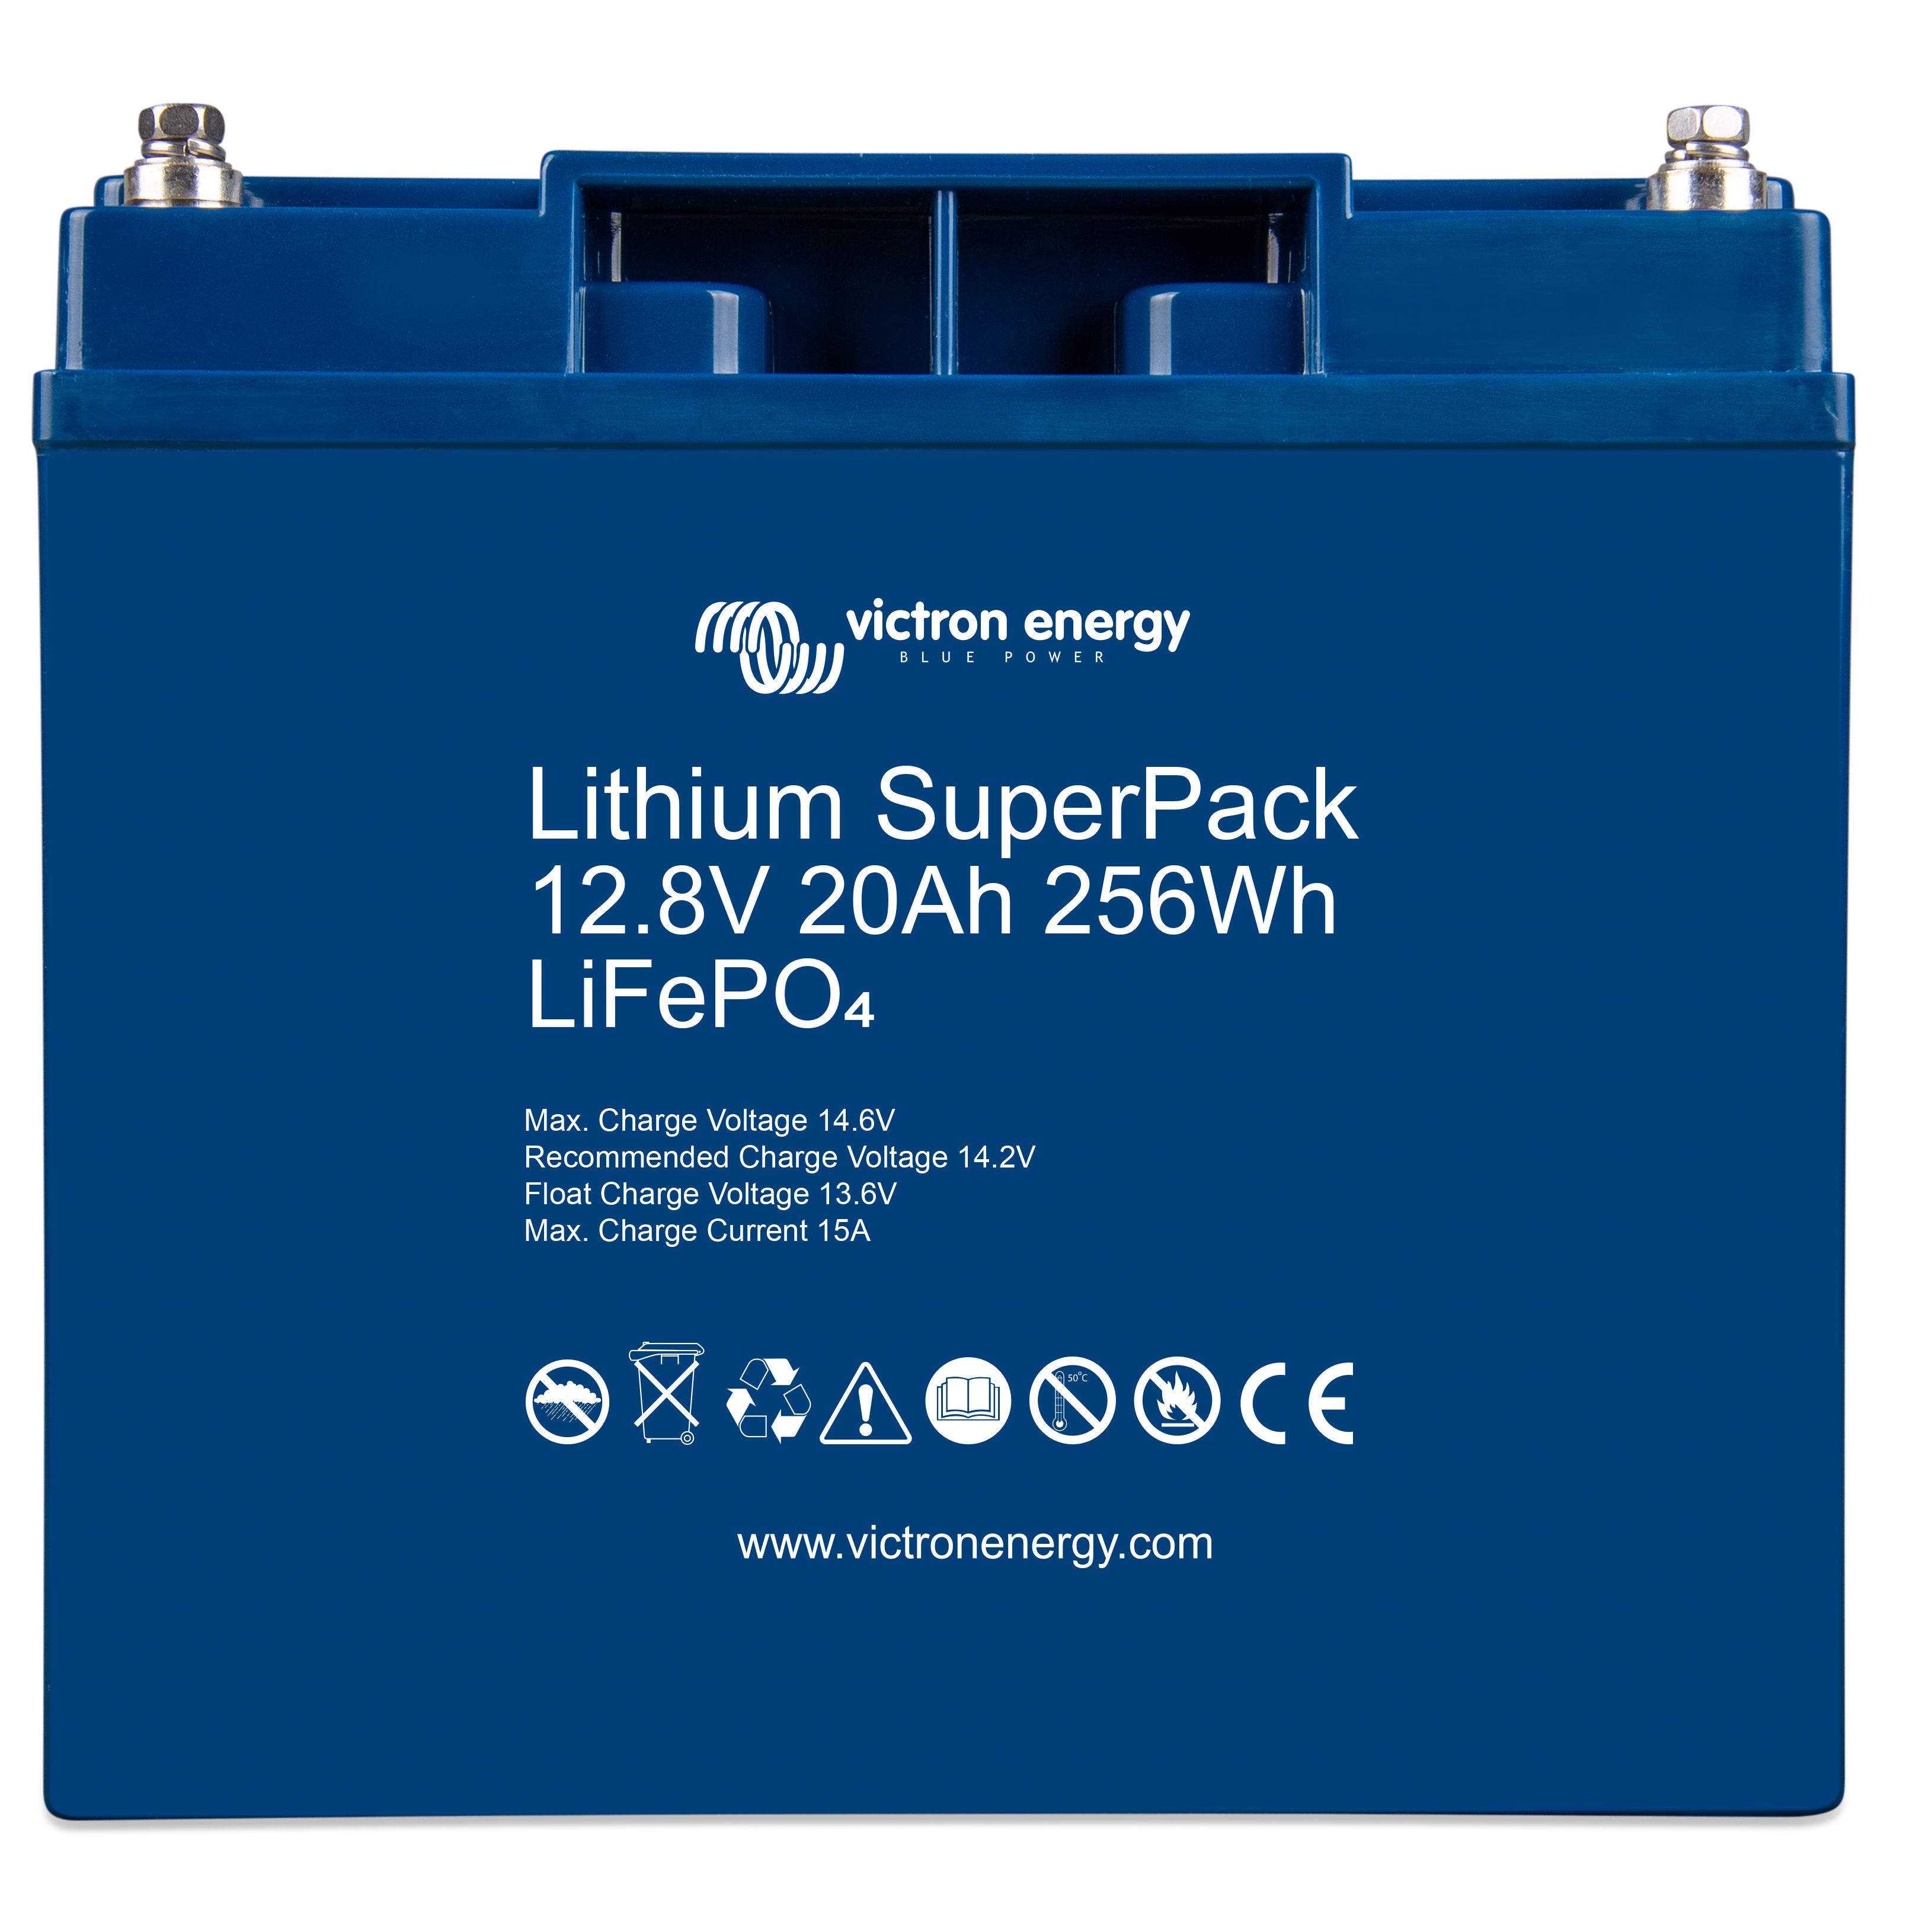 Batterie solaire lithium 20Ah-12,8V-BMS intégré SuperPack victron energy.